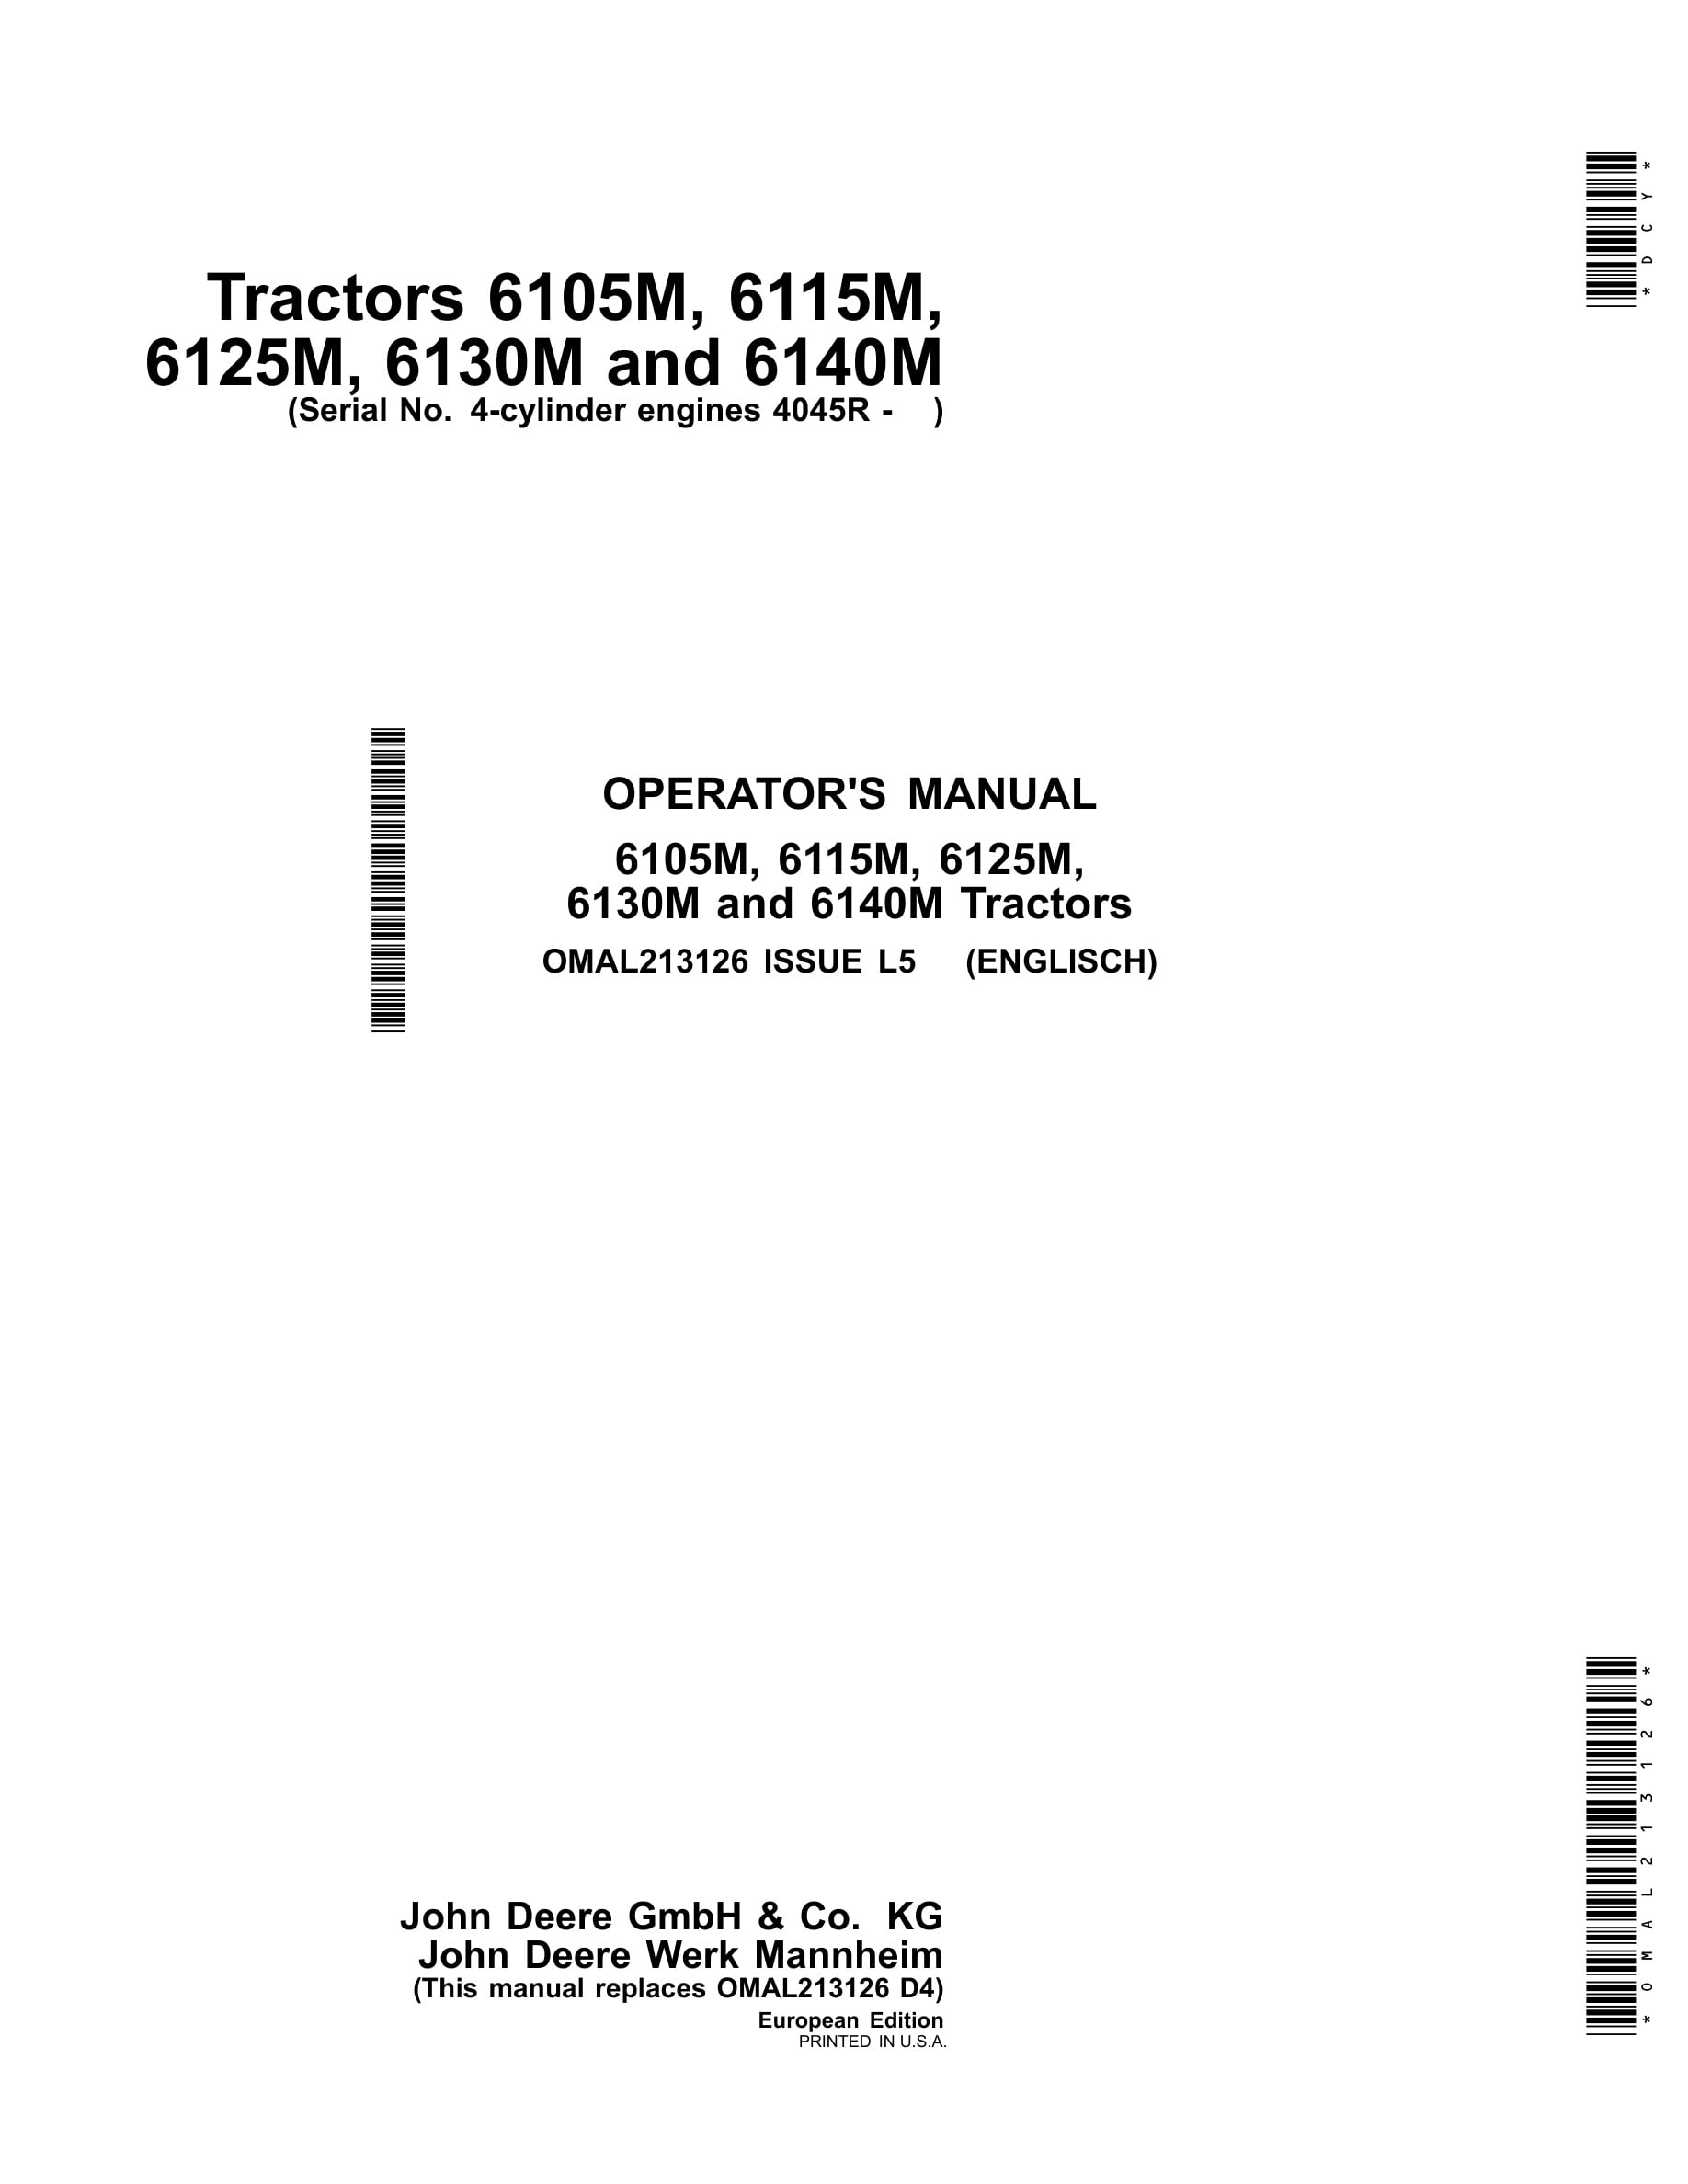 John Deere 6105m, 6115m, 6125m, 6130m And 6140m Tractors Operator Manuals OMAL213126-1